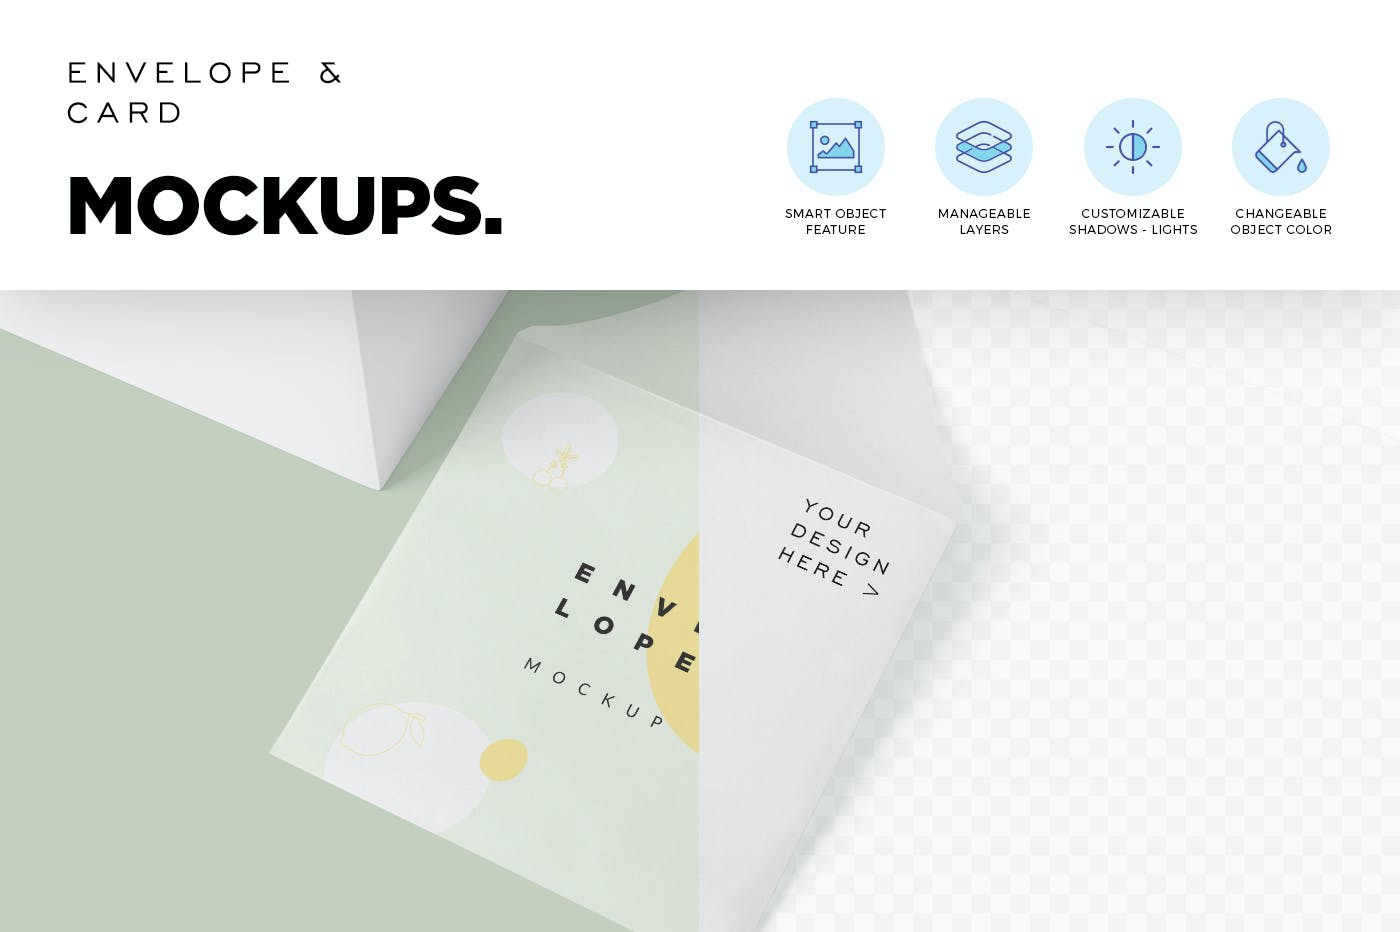 邀请卡设计效果图样机模板 Envelope & Card Mockups设计素材模板